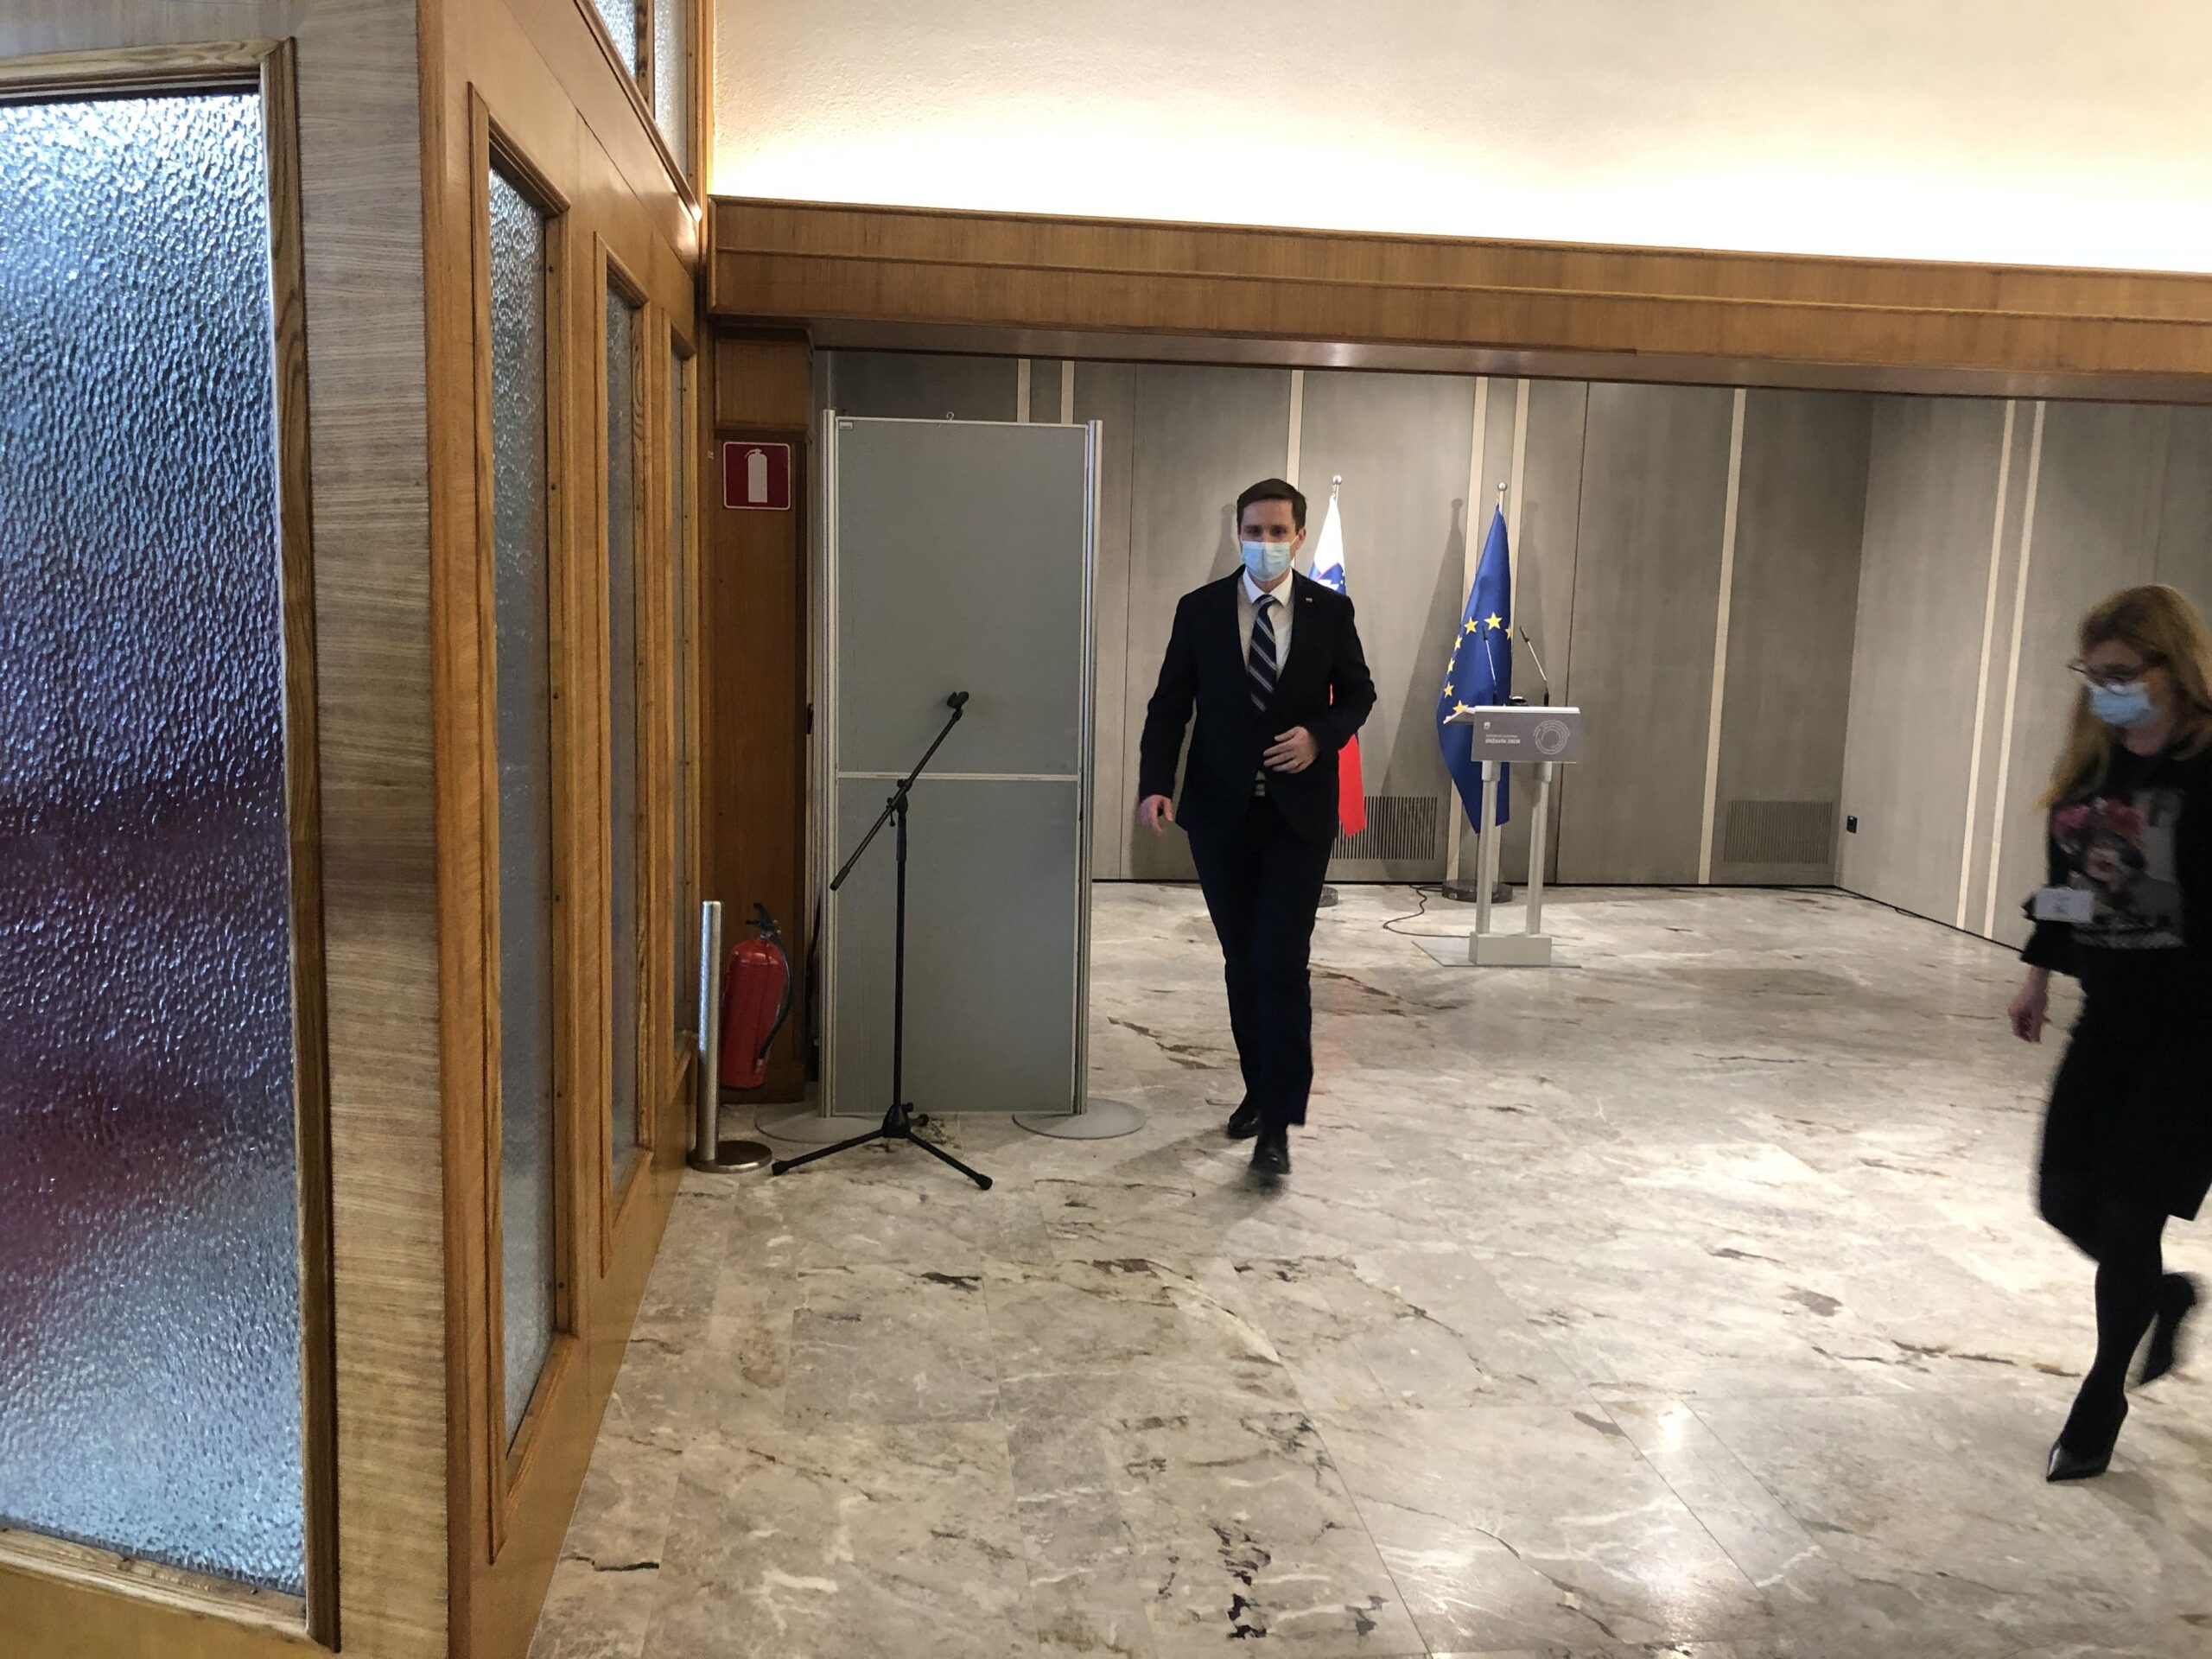 (V ŽIVO) Jutranji kolegij predsednika DZ odpovedan – Erjavec na sestanku s koalicijo KUL, tudi formalno že odstopil od kandidature